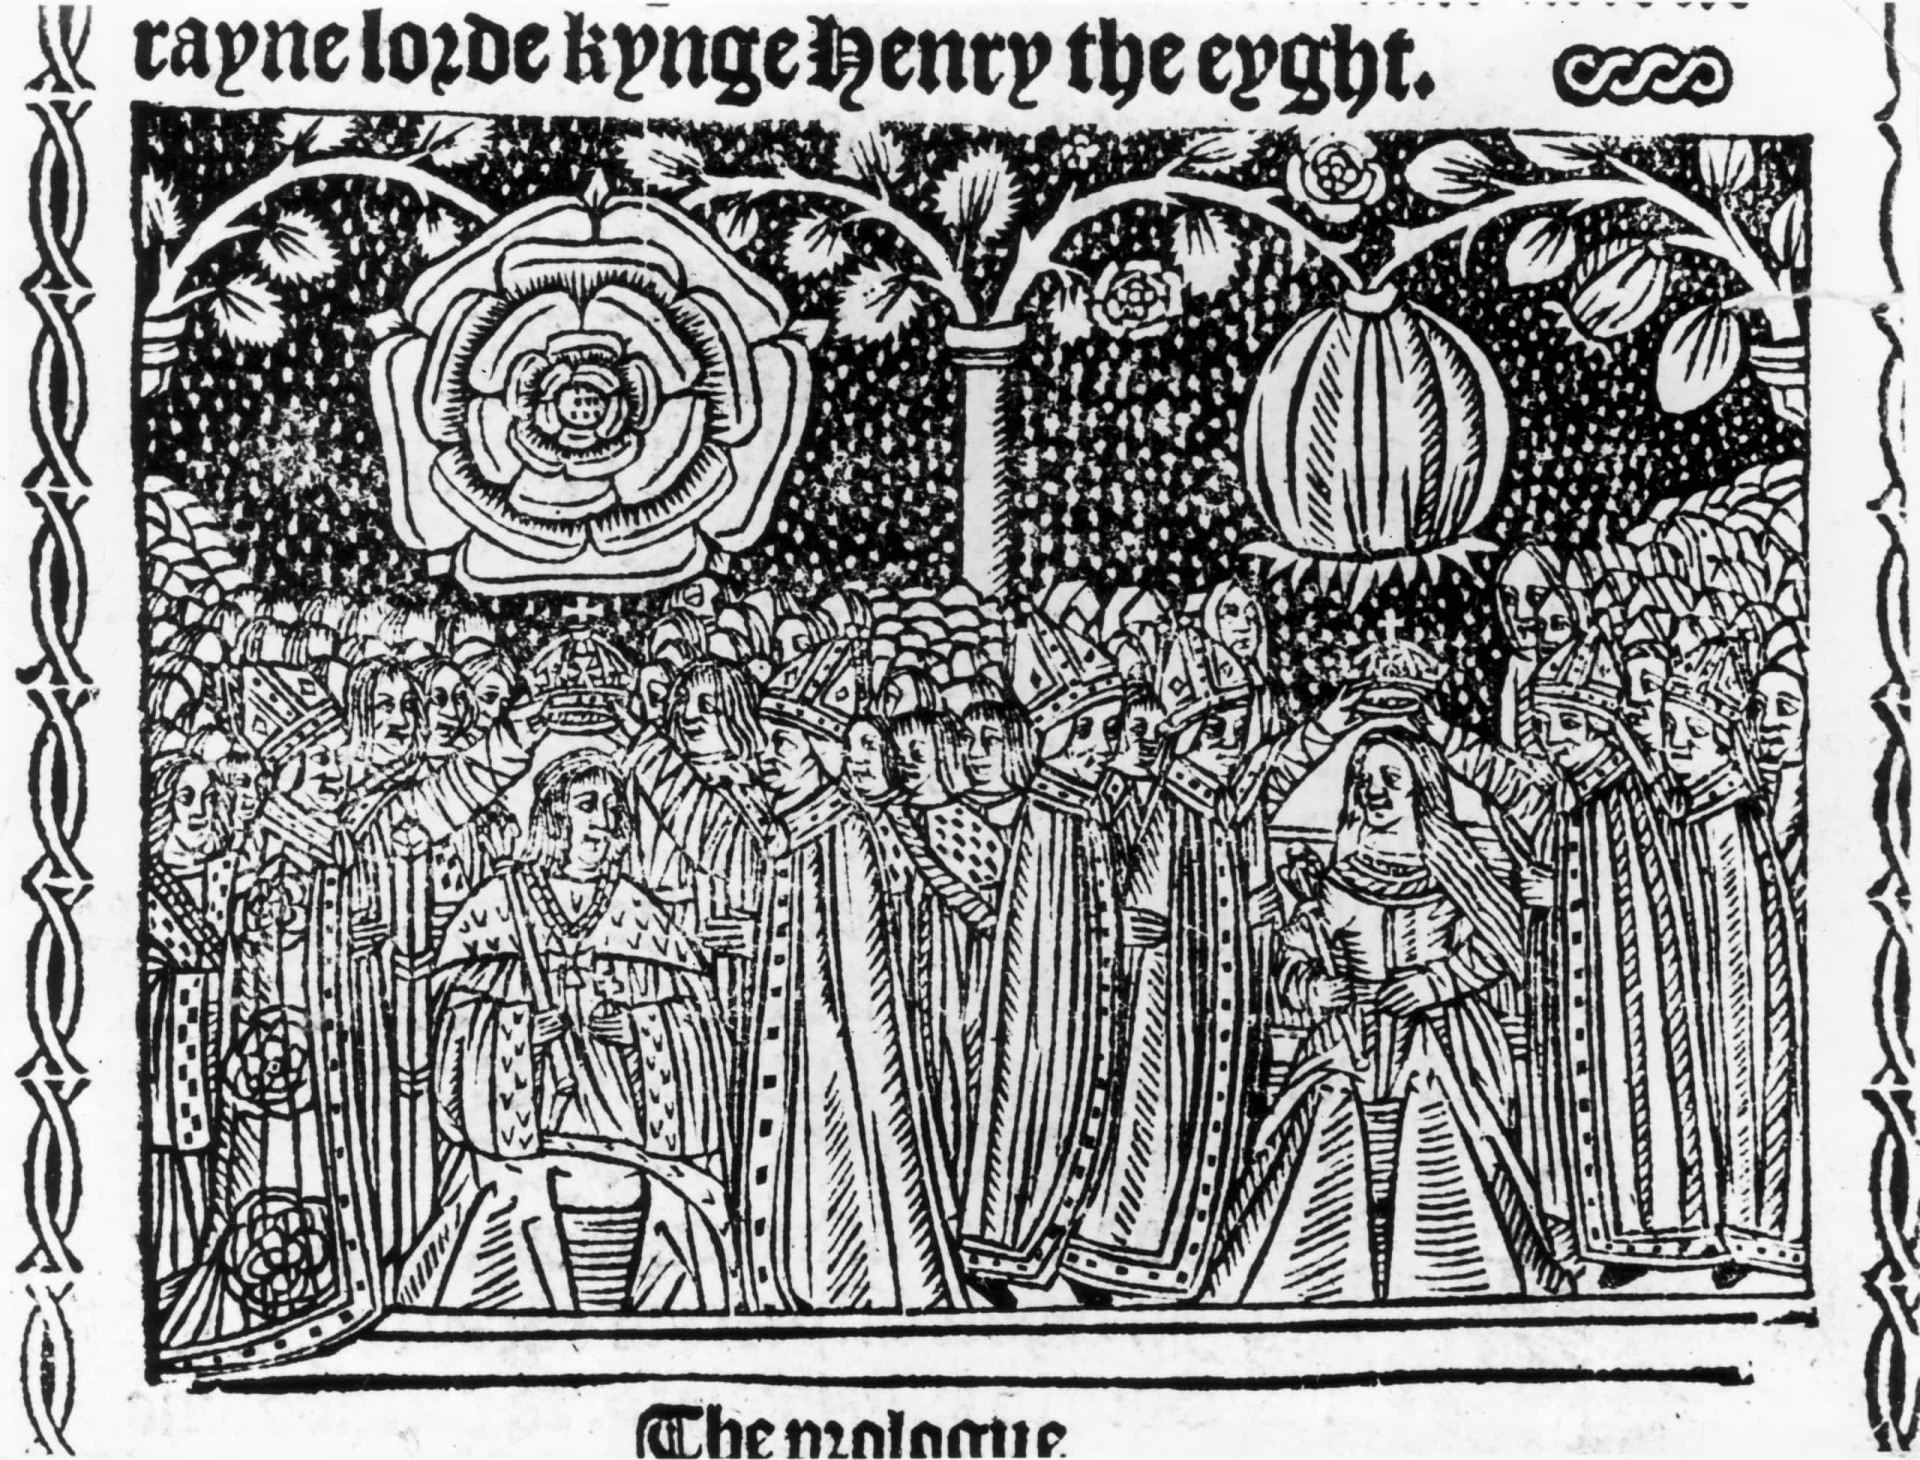 <p>O Rei Henrique VIII e sua Rainha Consorte Catarina foram coroados na Abadia de Westminster em junho de 1509.</p><p><a href="https://www.msn.com/pt-br/community/channel/vid-7xx8mnucu55yw63we9va2gwr7uihbxwc68fxqp25x6tg4ftibpra?cvid=94631541bc0f4f89bfd59158d696ad7e">Siga-nos e tenha acesso a um excelente conteúdo exclusivo todos os dias</a></p>